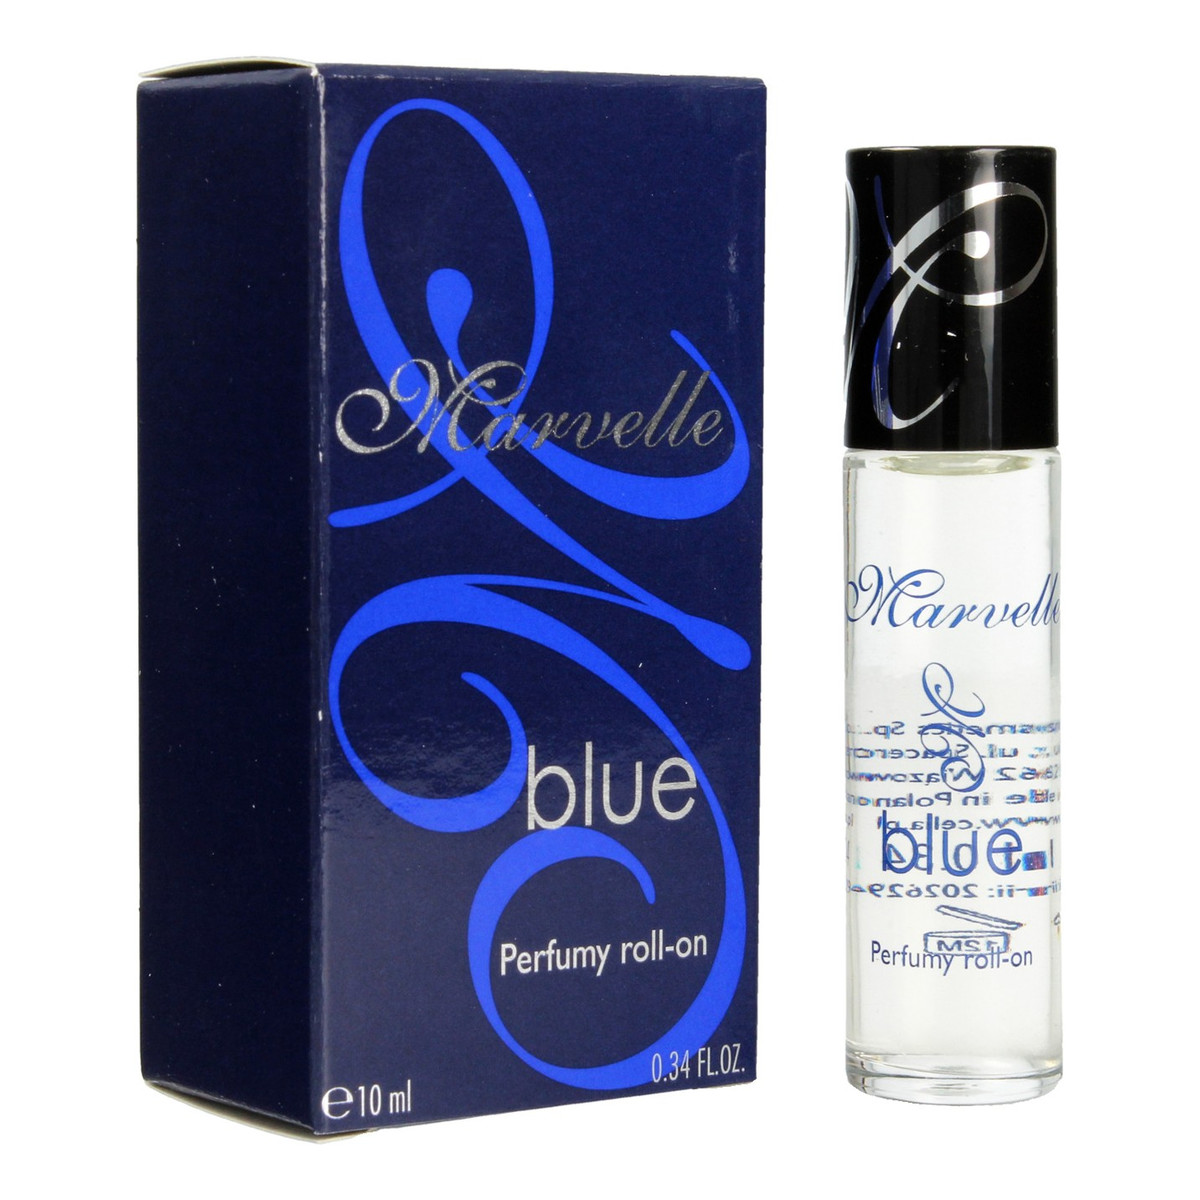 Celia Marvelle Blue Perfumy roll-on 10ml